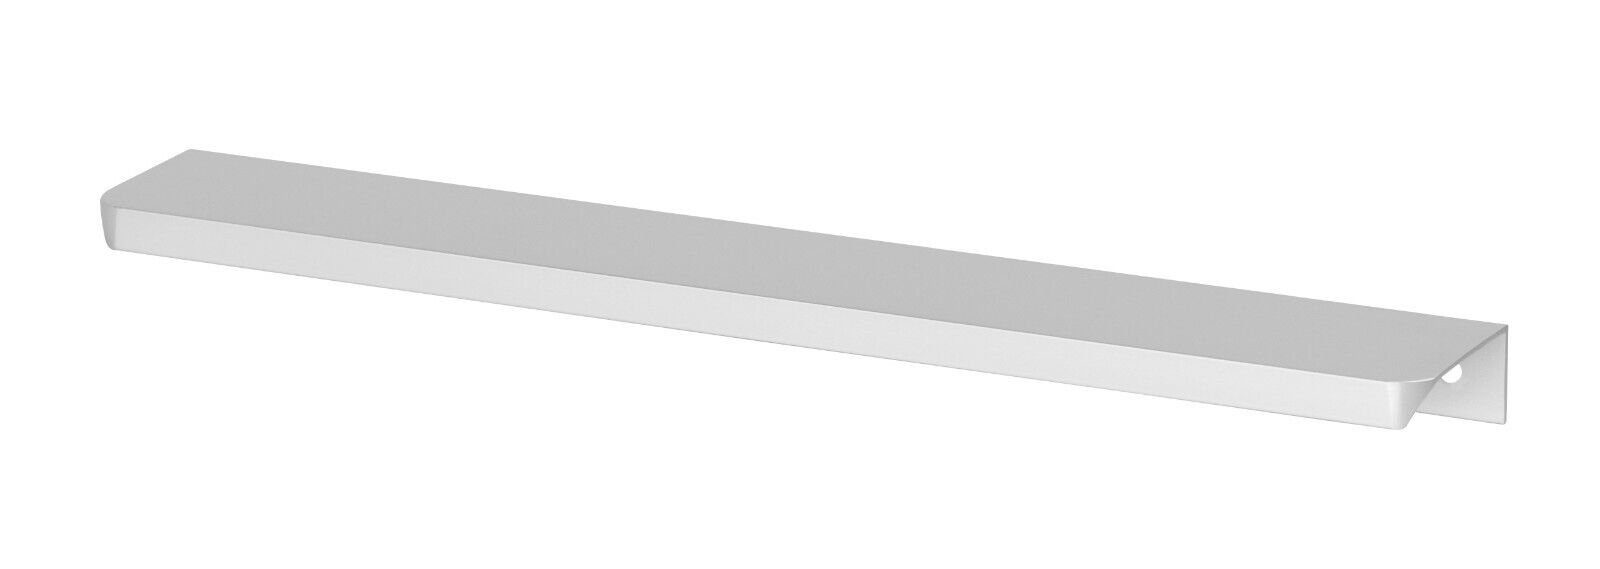 Küchengriff Silber Griffleiste Griffprofil Prima-Online Möbelgriff Möbelgriff Profilgriff